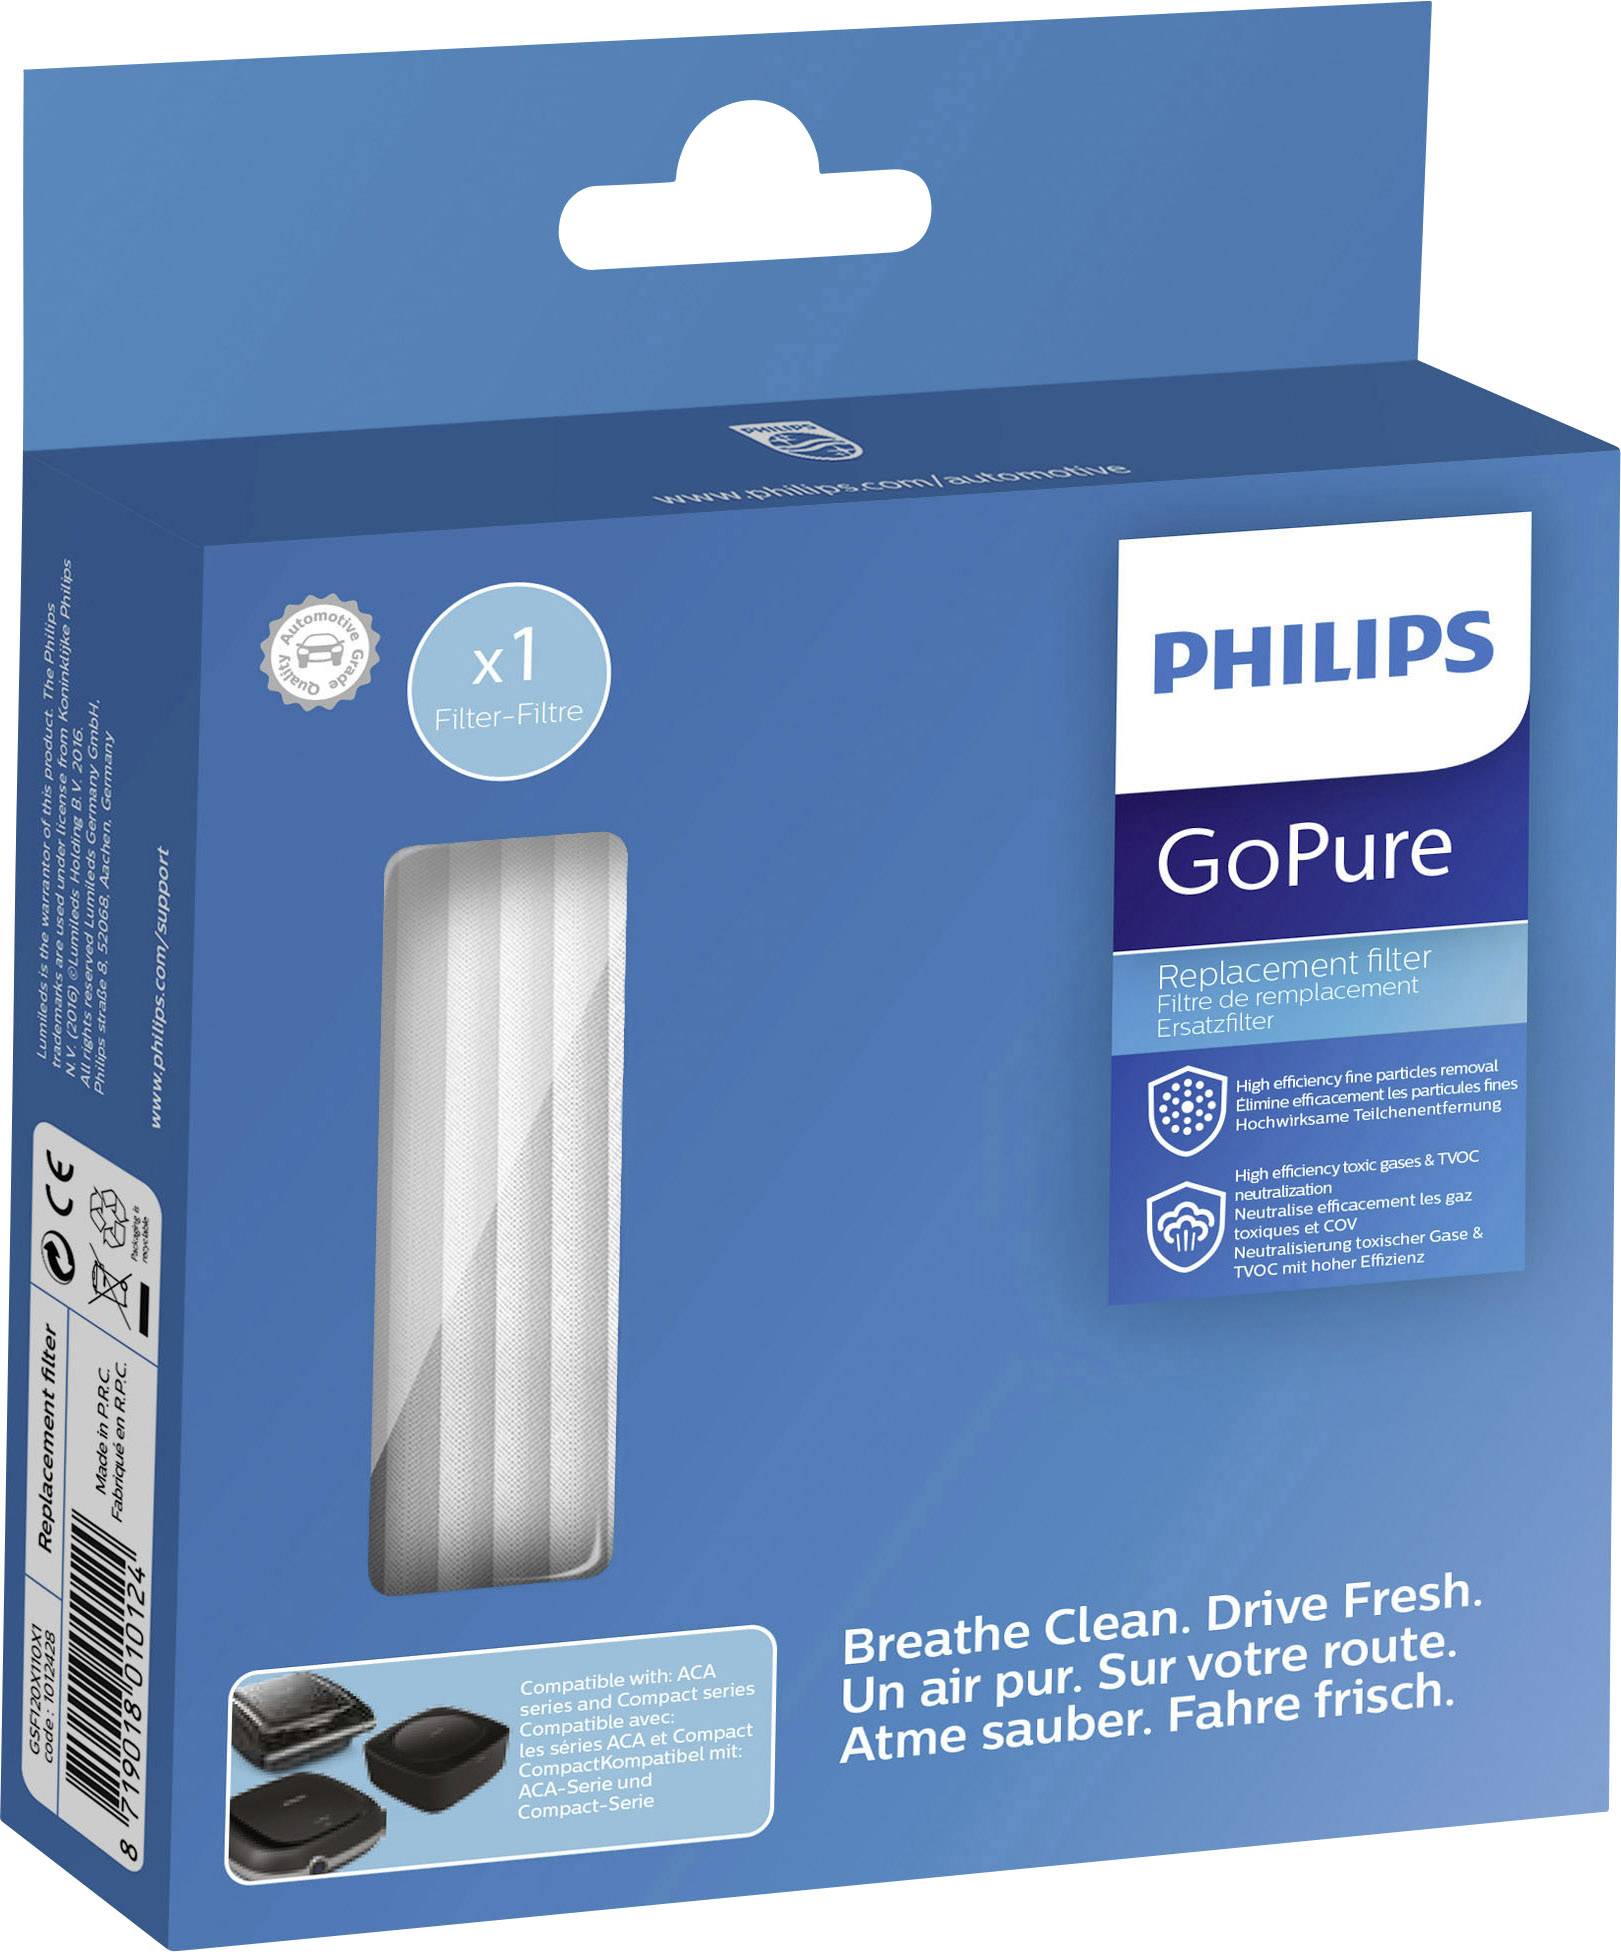 philips gopure compact 100 airmax car air purifier OFF-55%